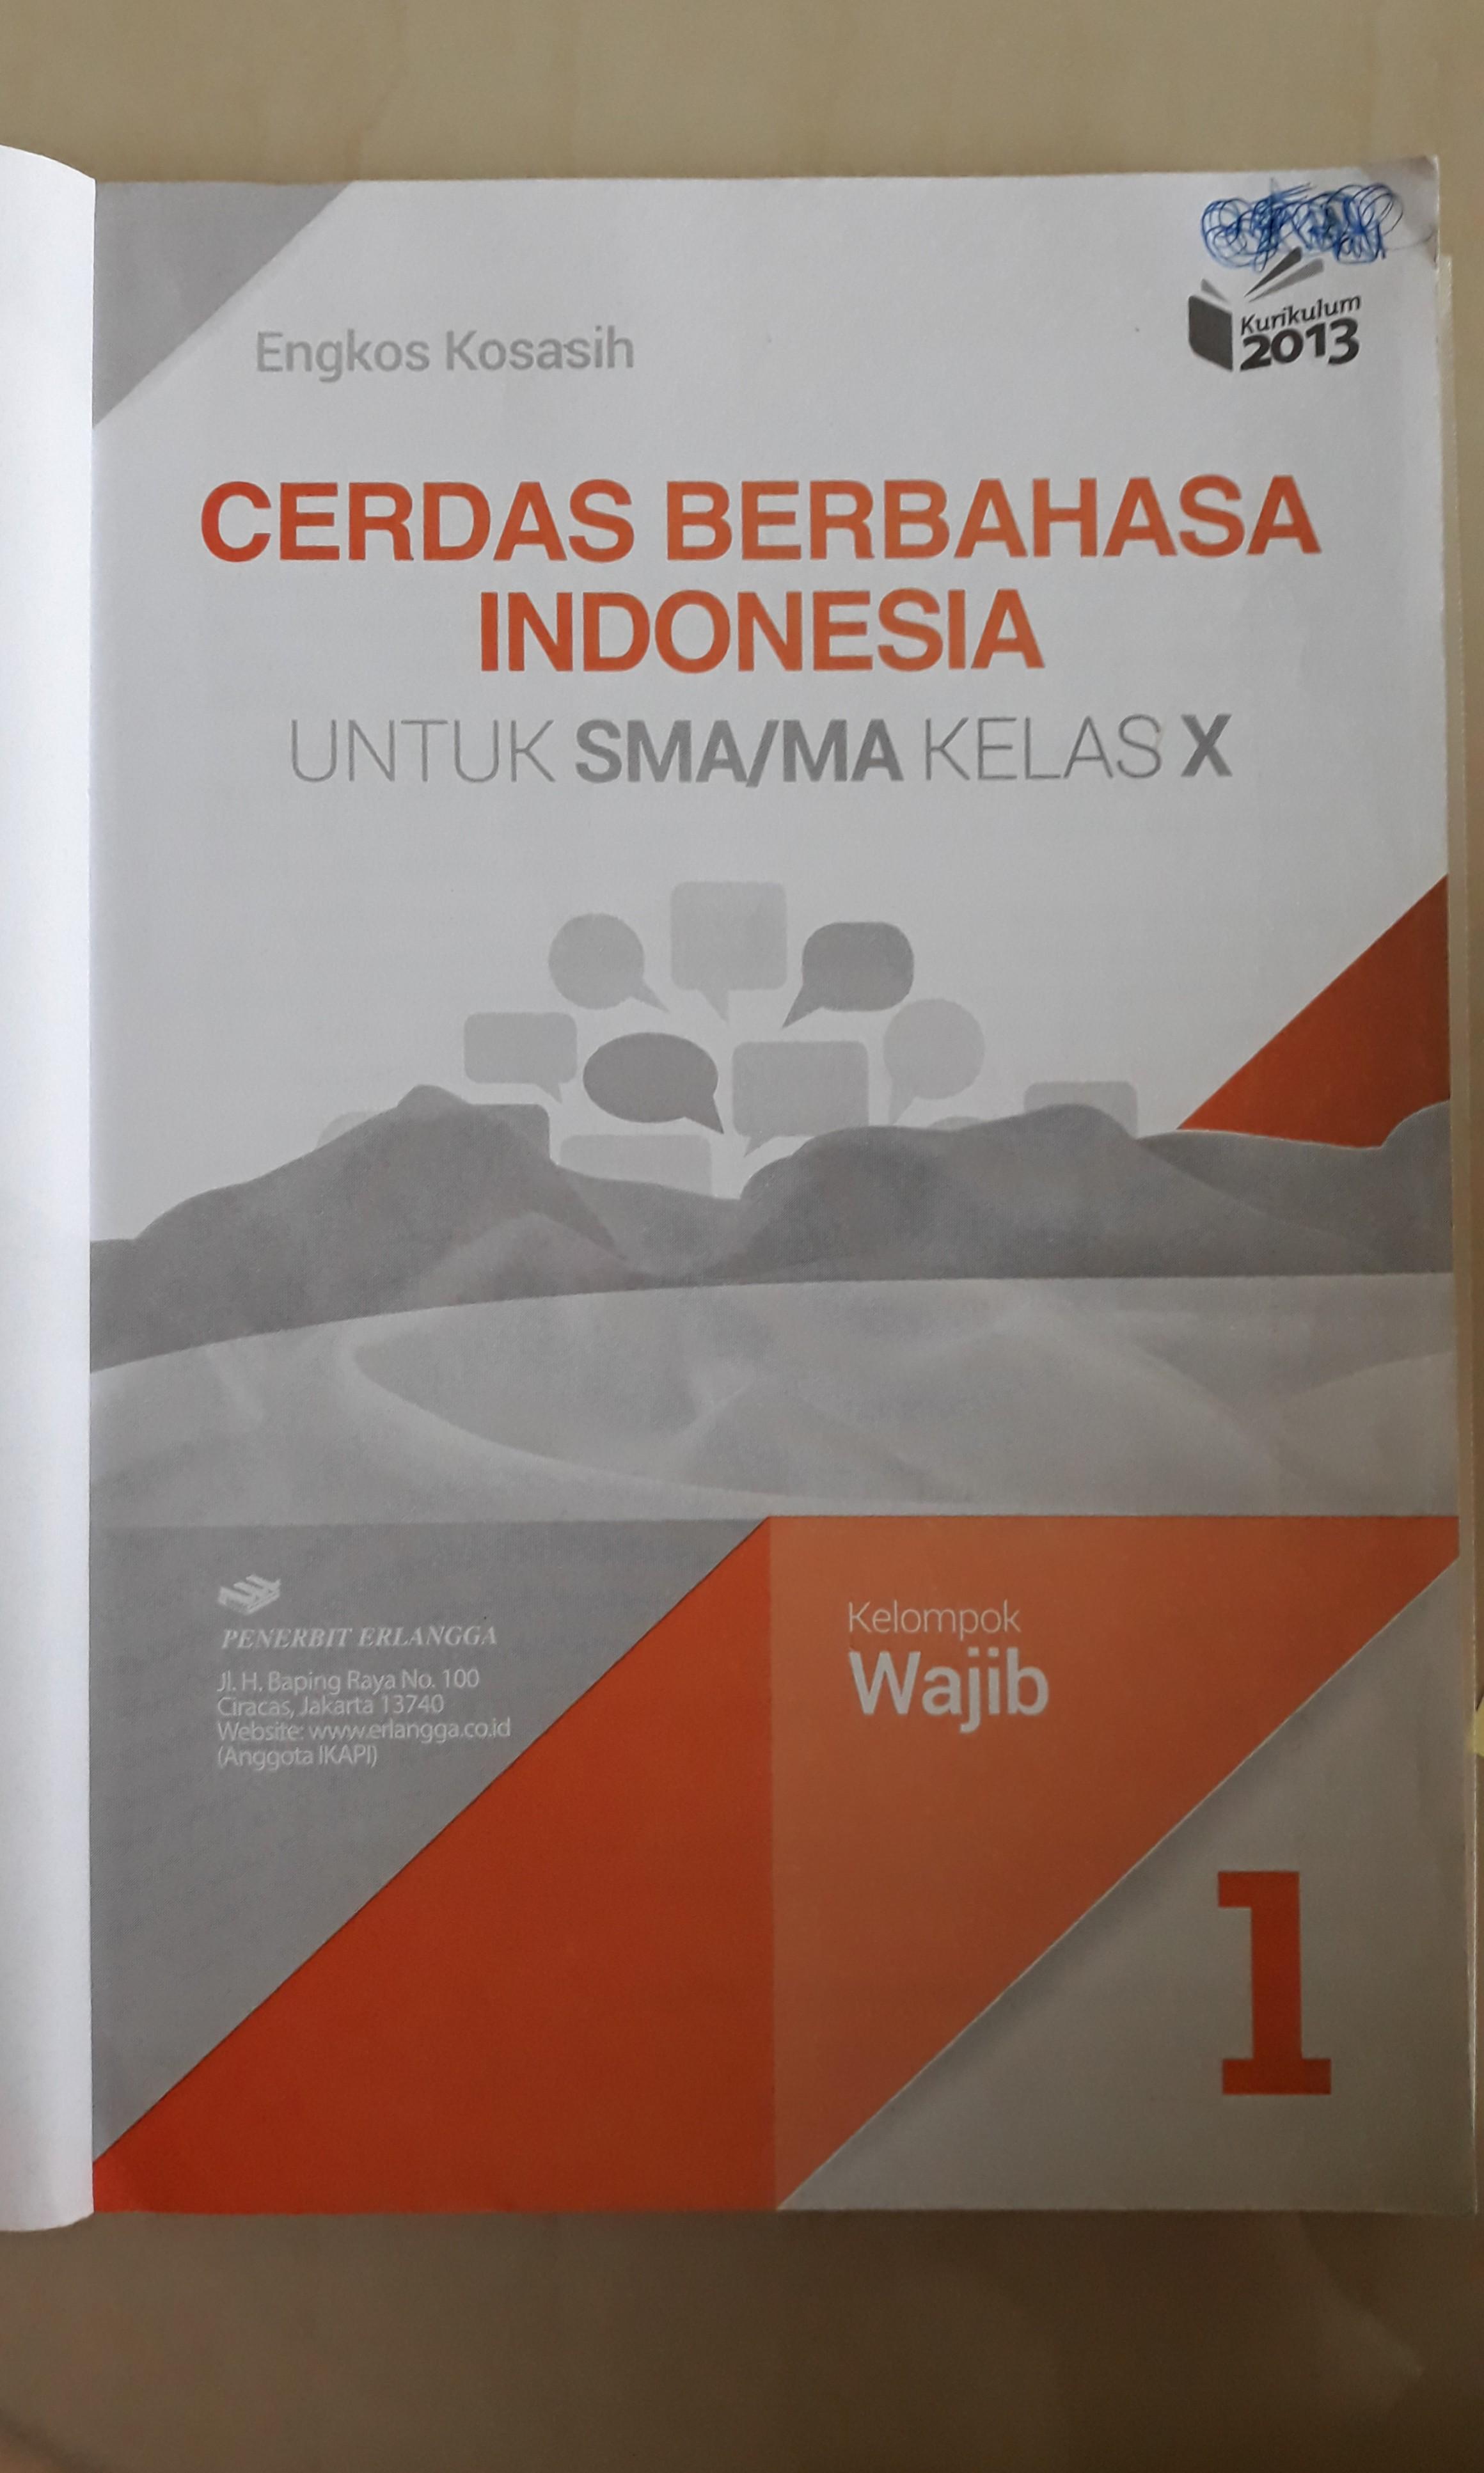 Kunci Jawaban Bahasa Indonesia Kelas 10 Kurikulum 2013 Rismax